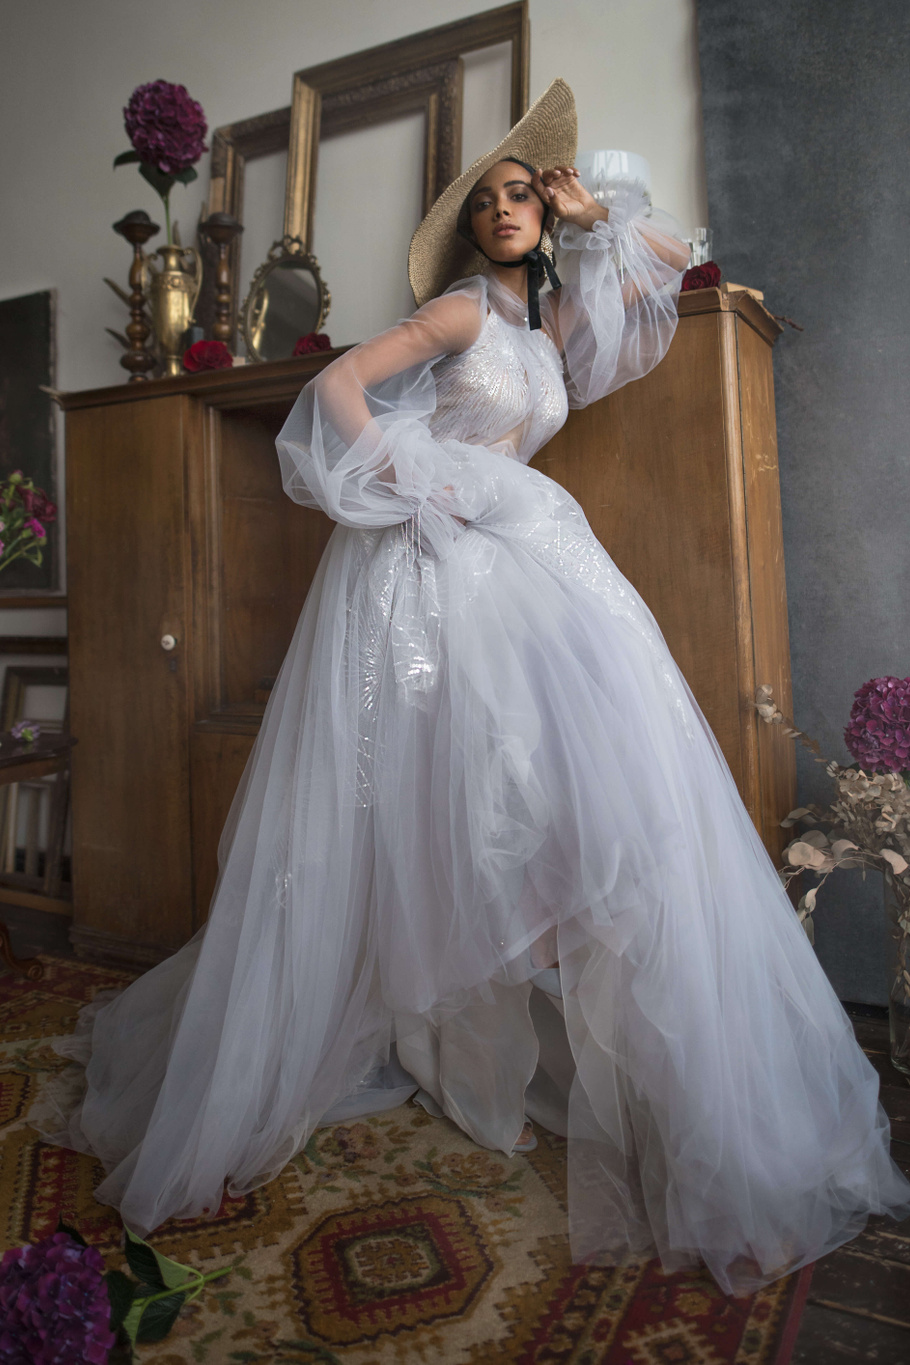 Купить свадебное платье «Остин» Бламмо Биамо из коллекции Нимфа 2020 года в Санкт-Петербурге